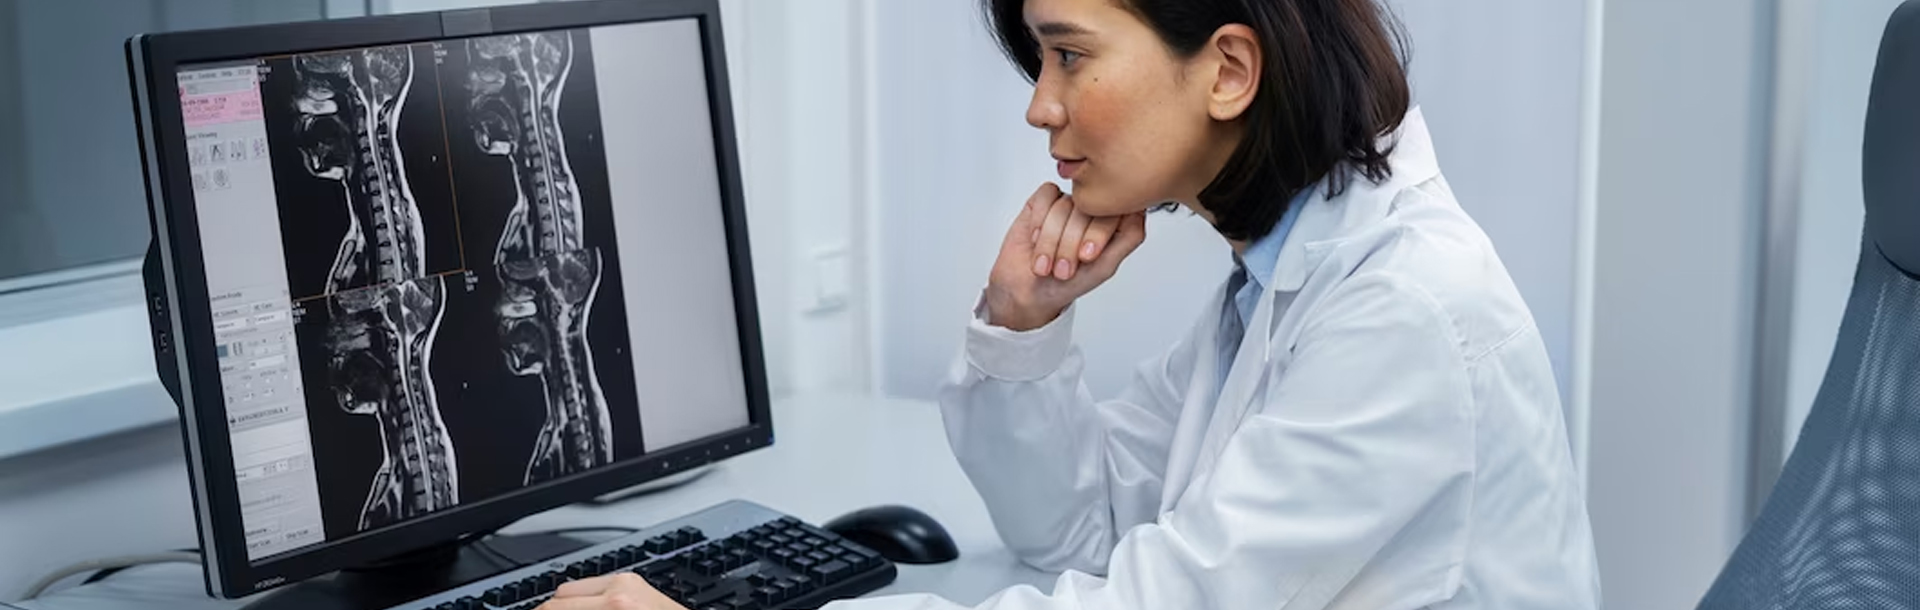 Ärztin sitzt am Computer und wertet Ergebnisse aus